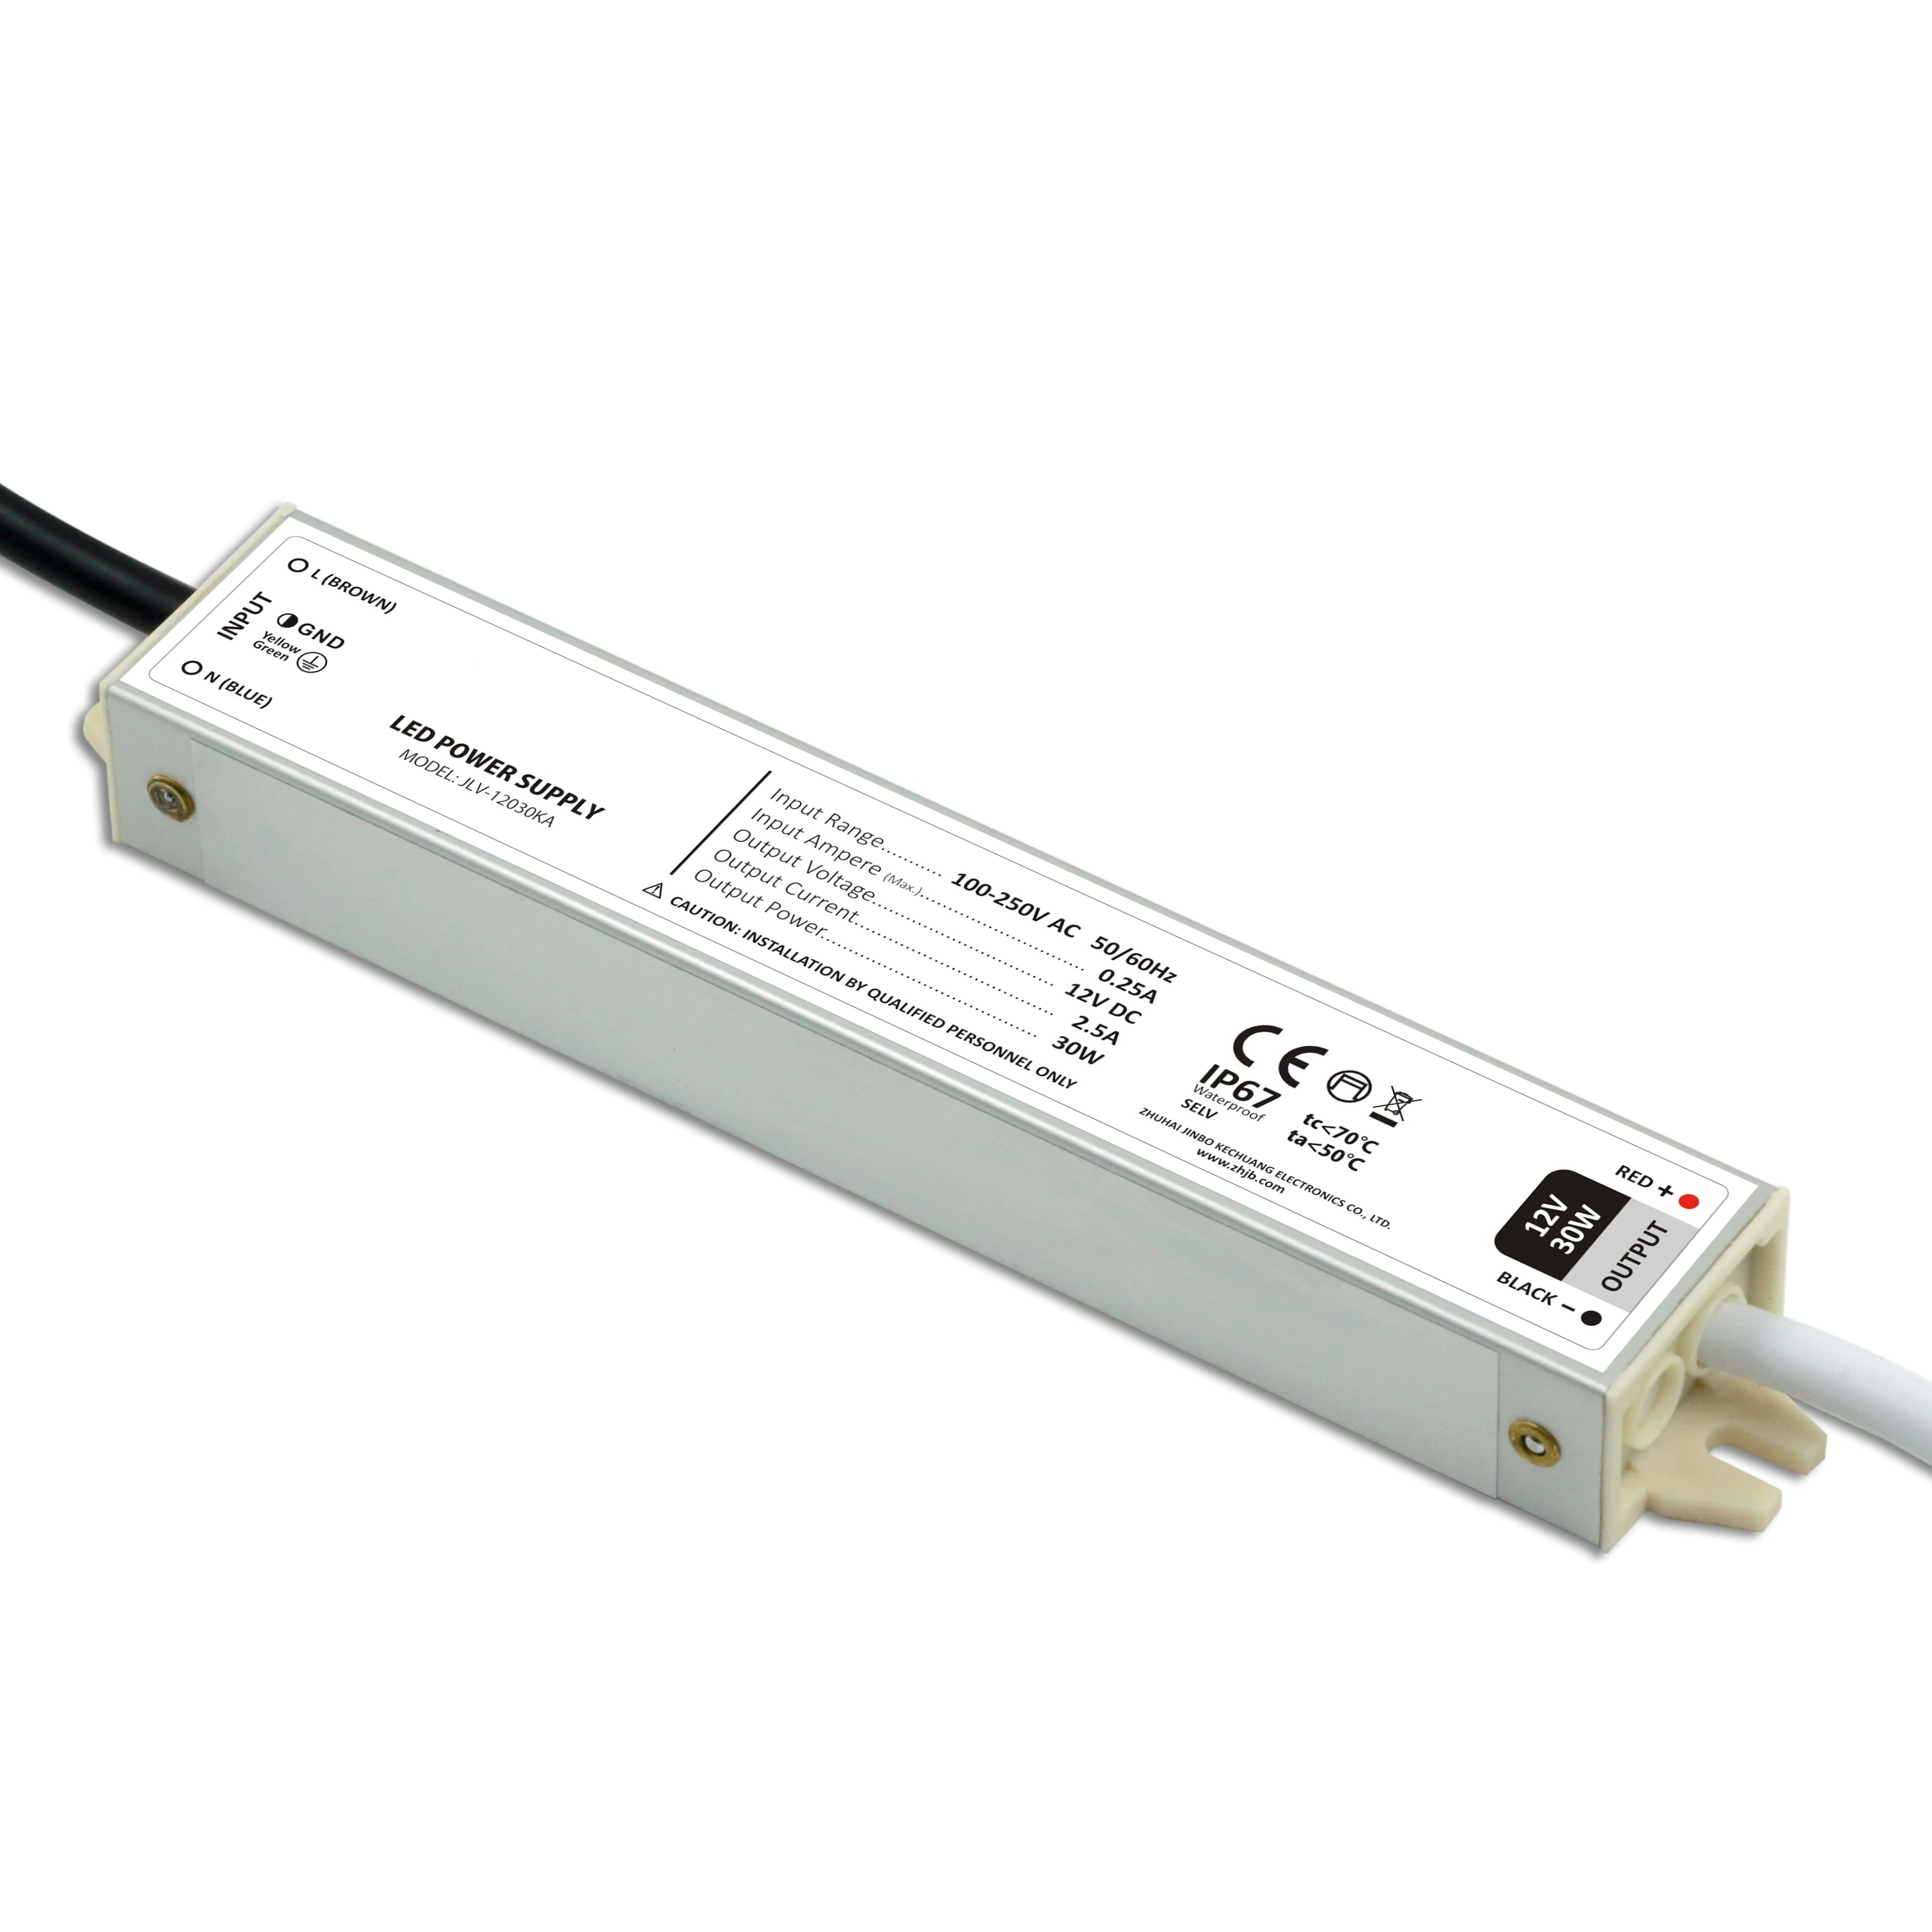 LED transformador 12w 0,5a 24v fuente de alimentación impermeable transformador de LED tiras 